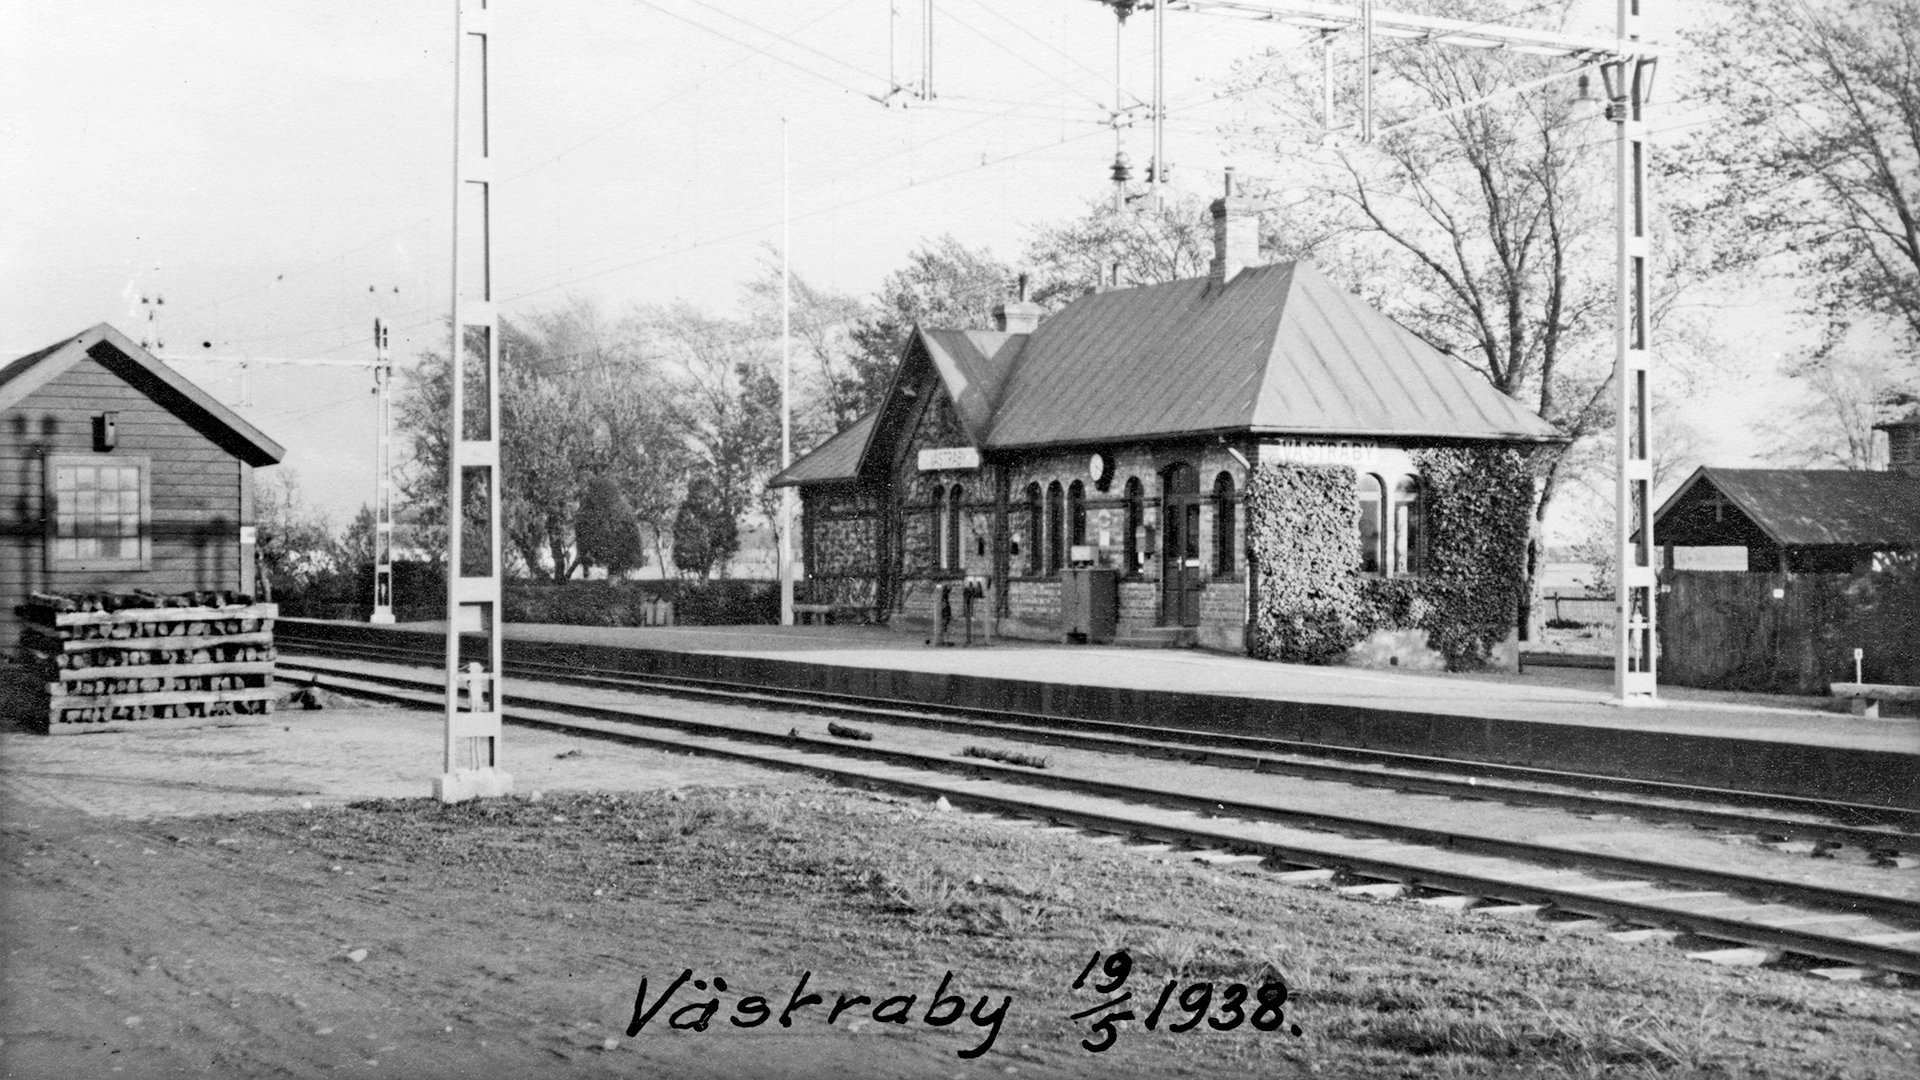 Västraby station år 1938. Stationsbyggnaden är riven men spåren efter perrongen syns fortfarande och här finns en rastplats i lä från slättens vindar.